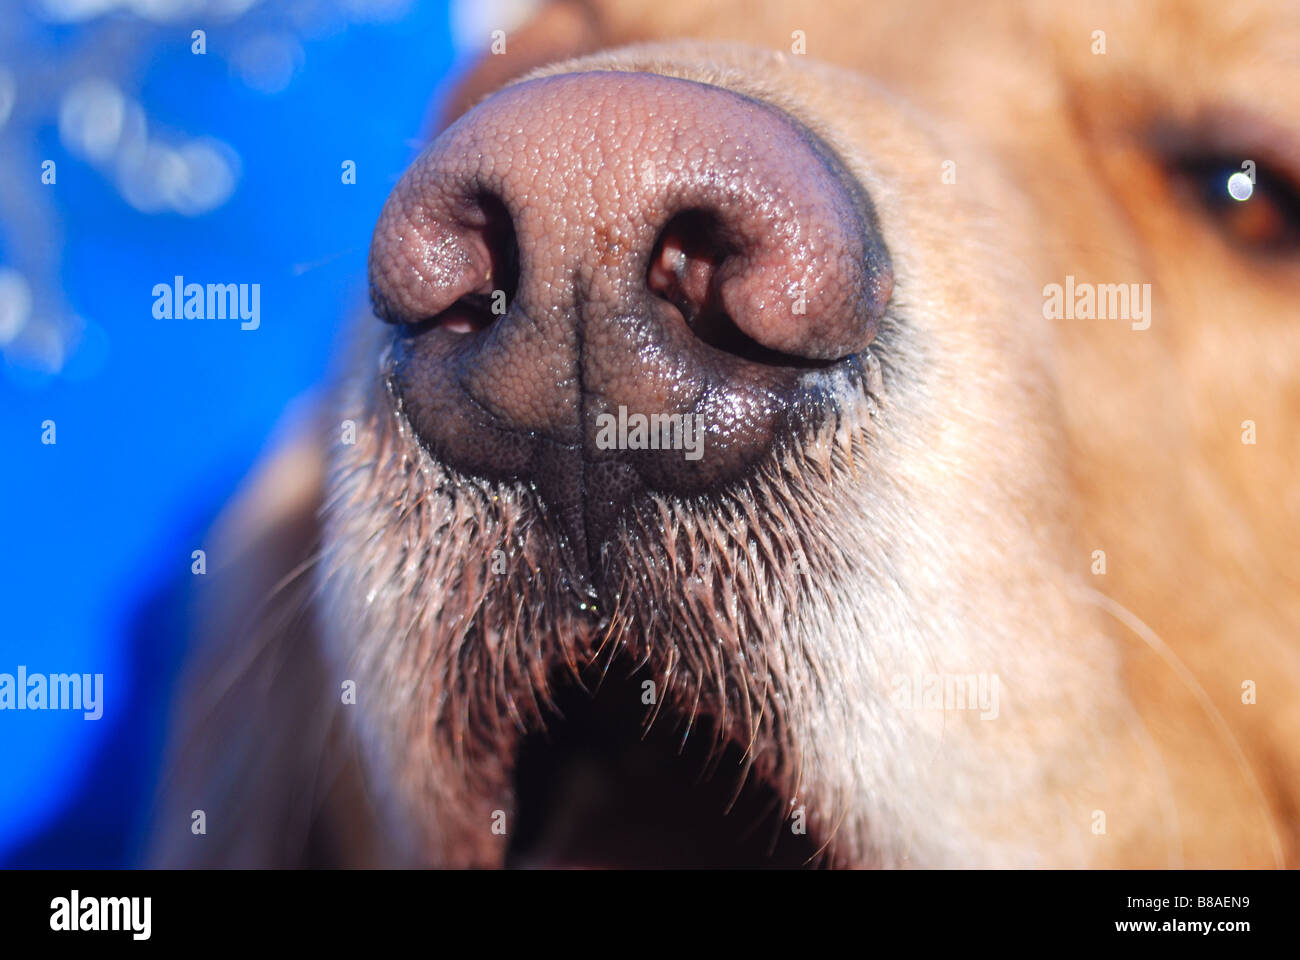 Close up of a nose of a Golden Retriever Stock Photo